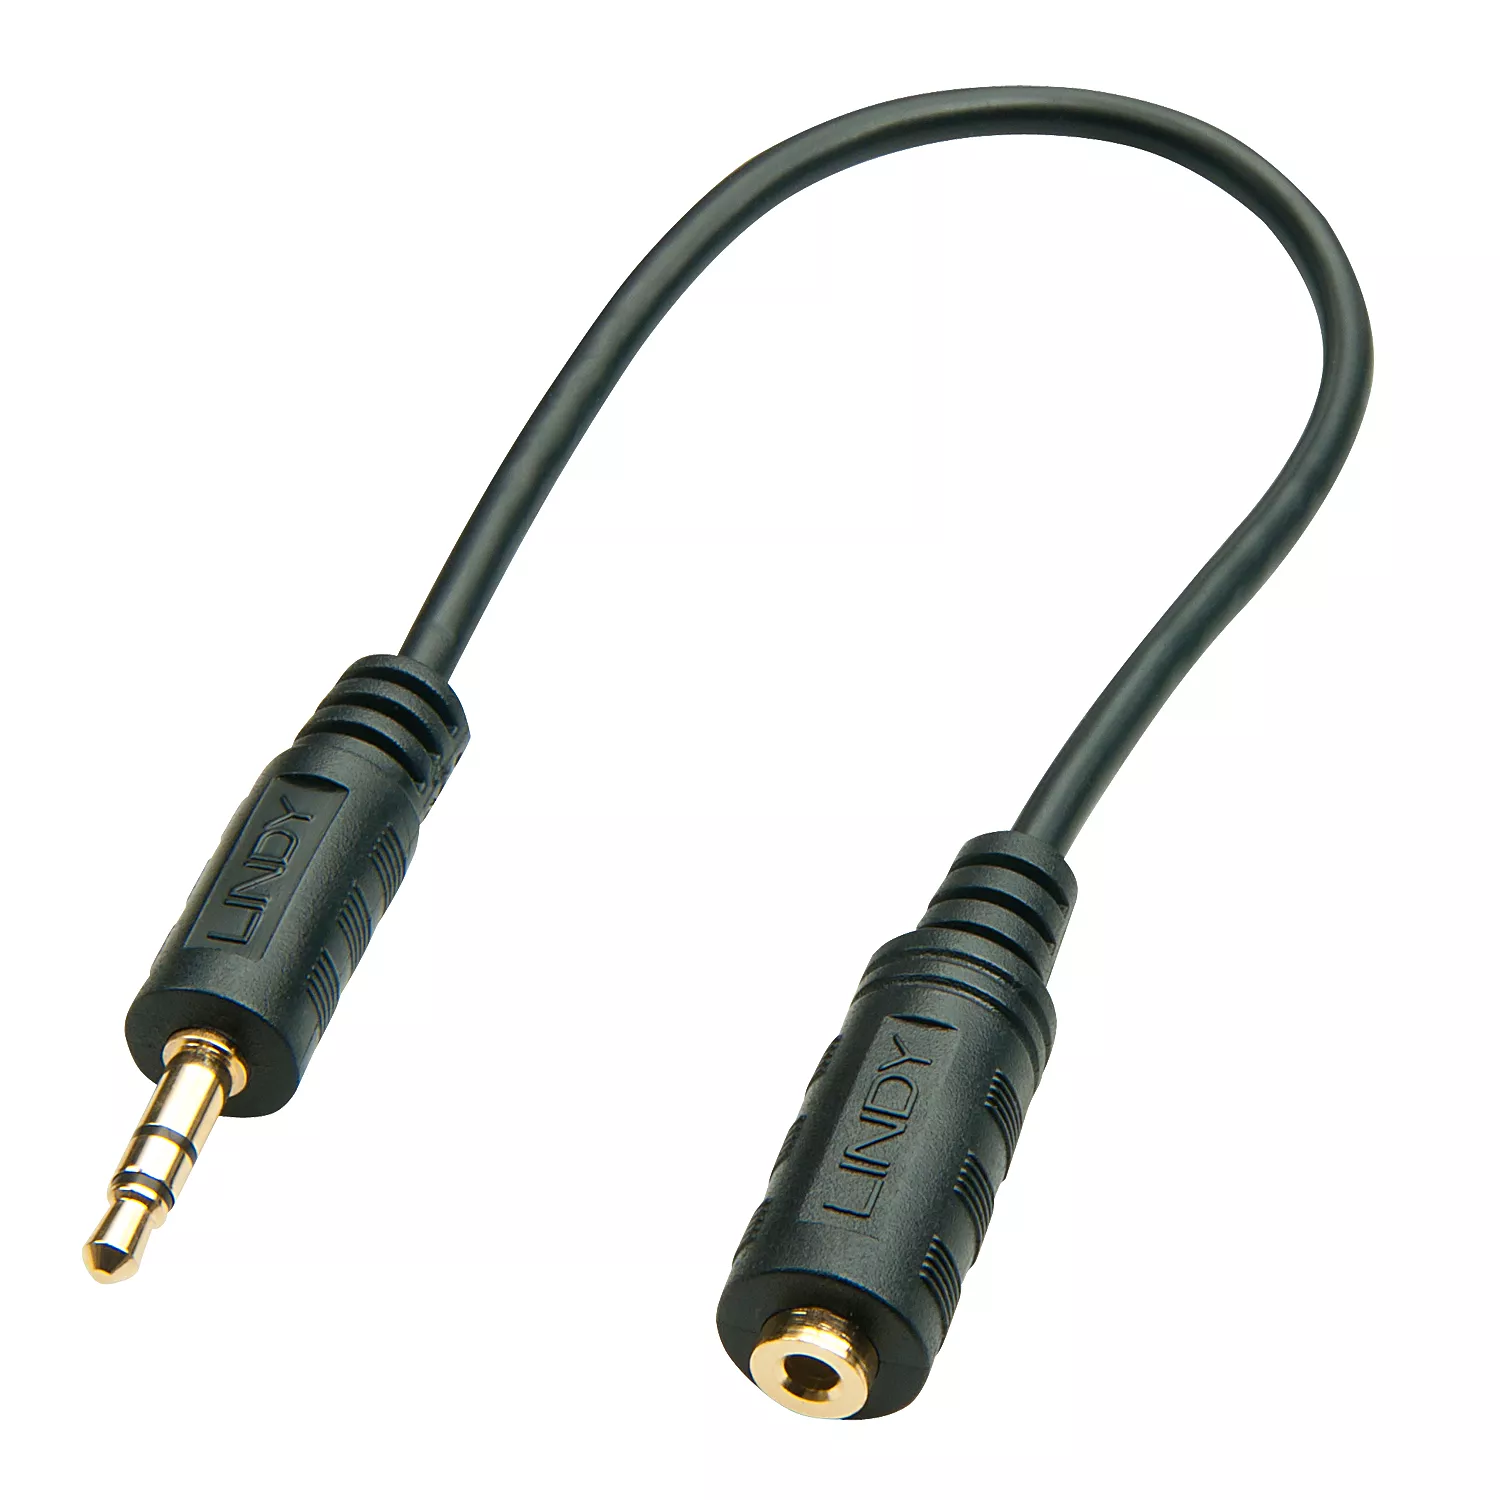 Achat LINDY Audio Adapter Cable 3.5mm Male / 2.5mm Female et autres produits de la marque Lindy